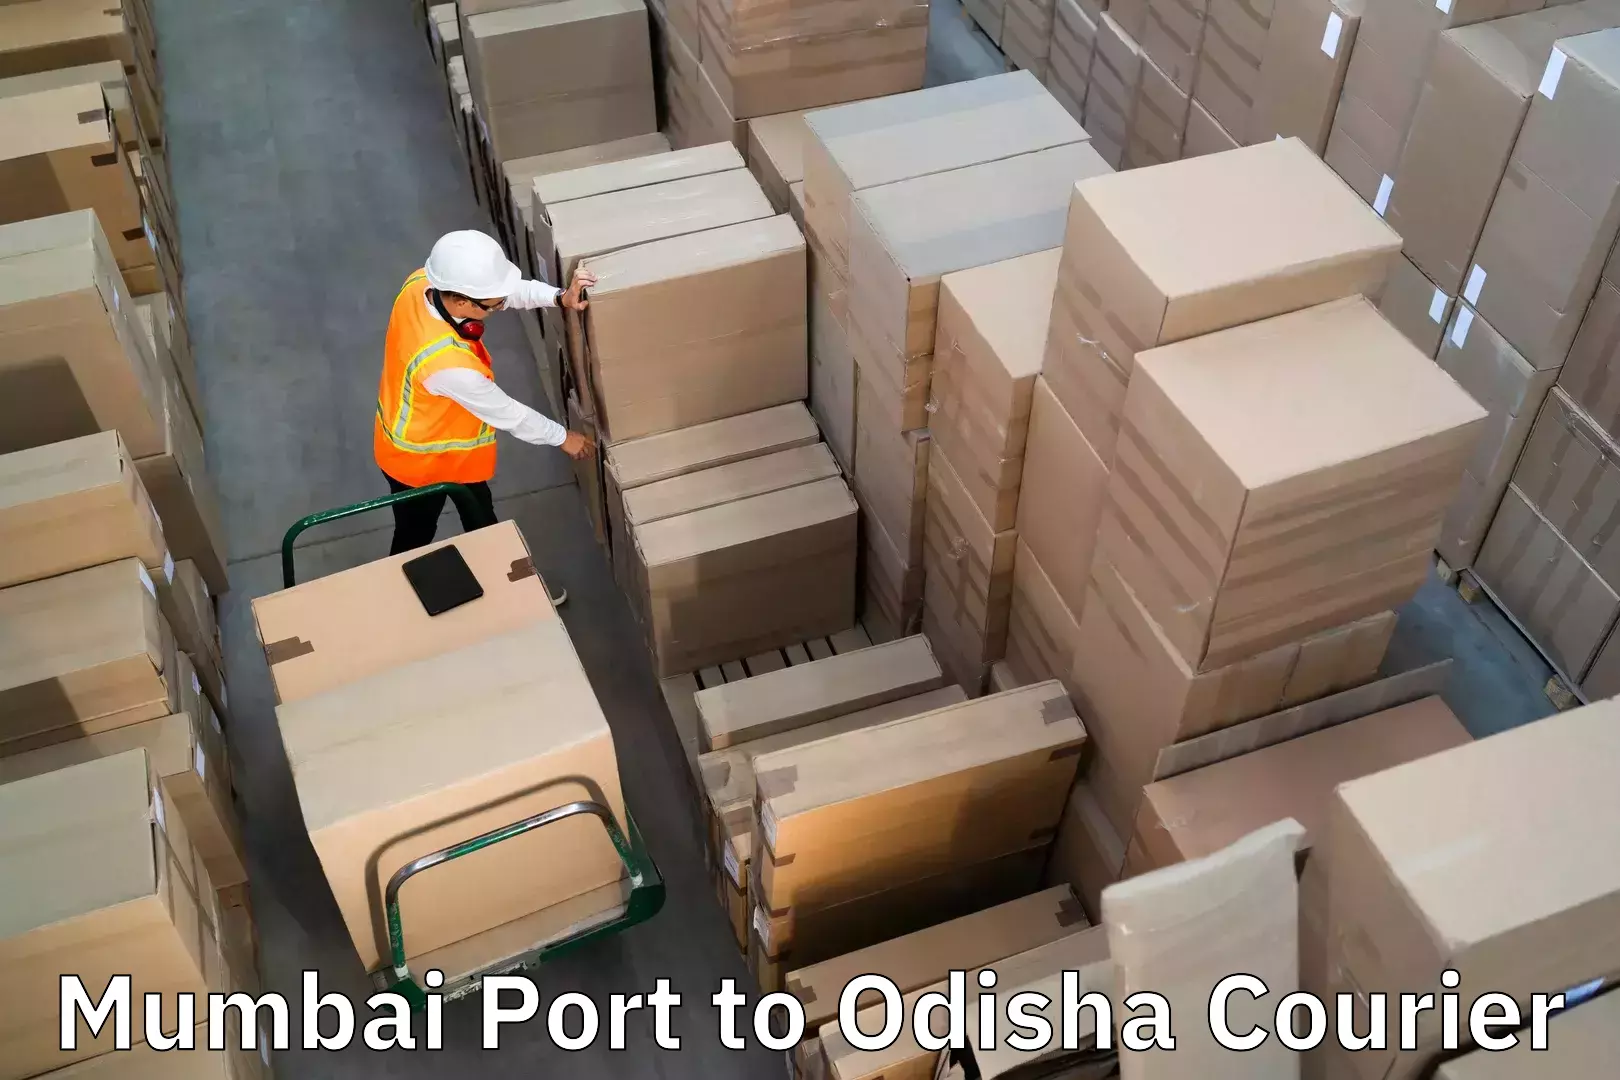 Affordable luggage shipping Mumbai Port to Puri